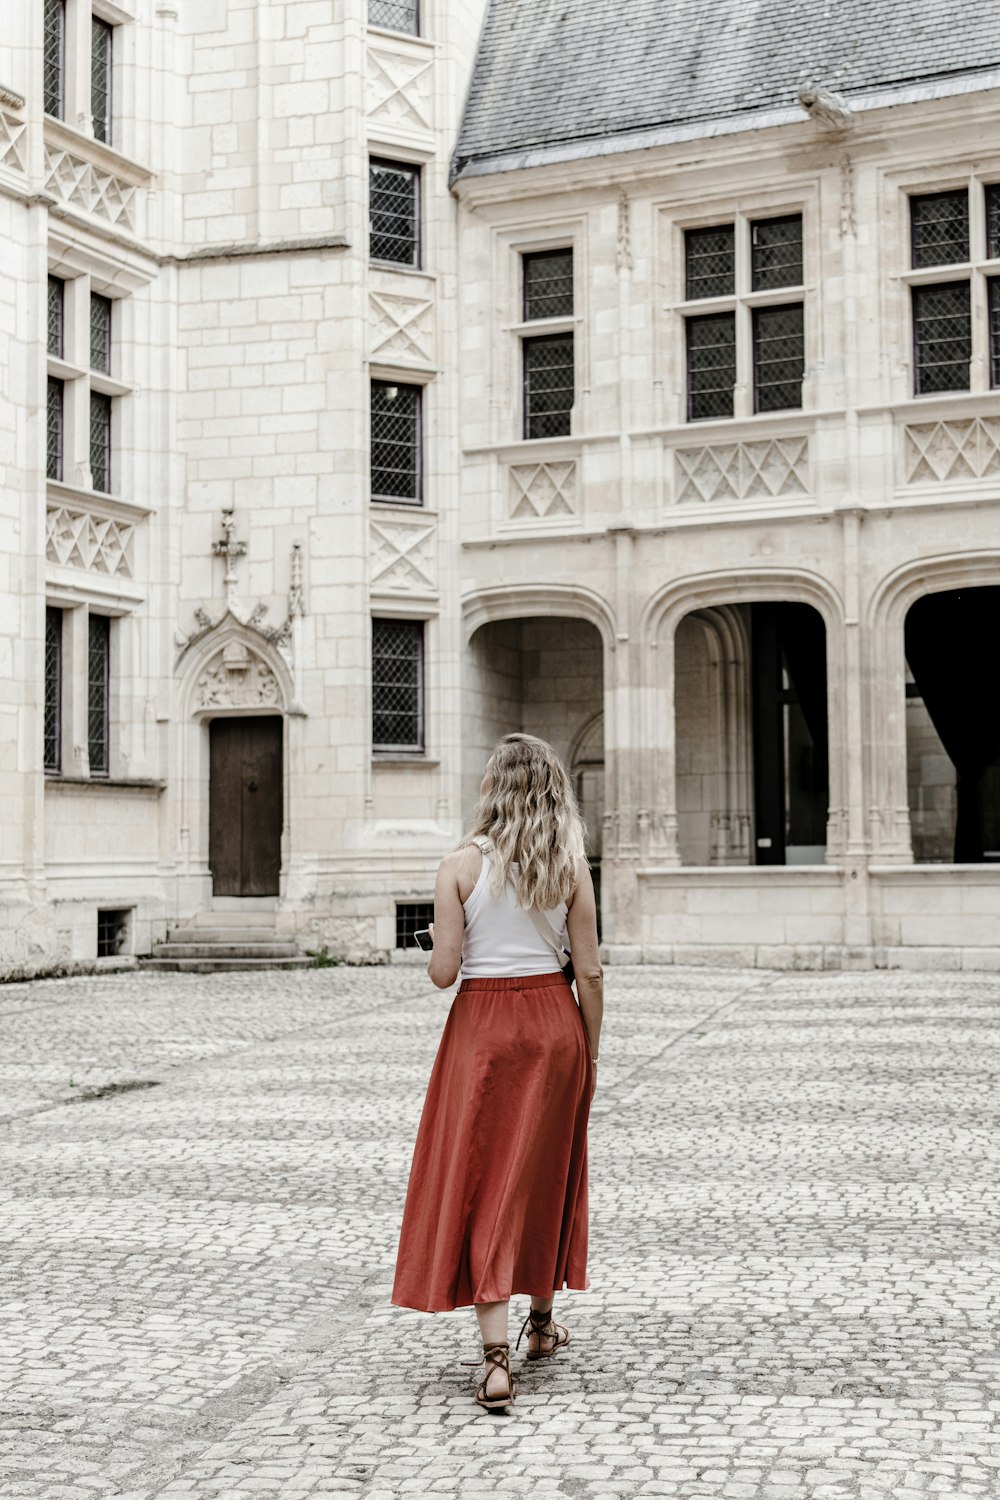 赤いスカートをはいた女性が大きな建物の前に立っている